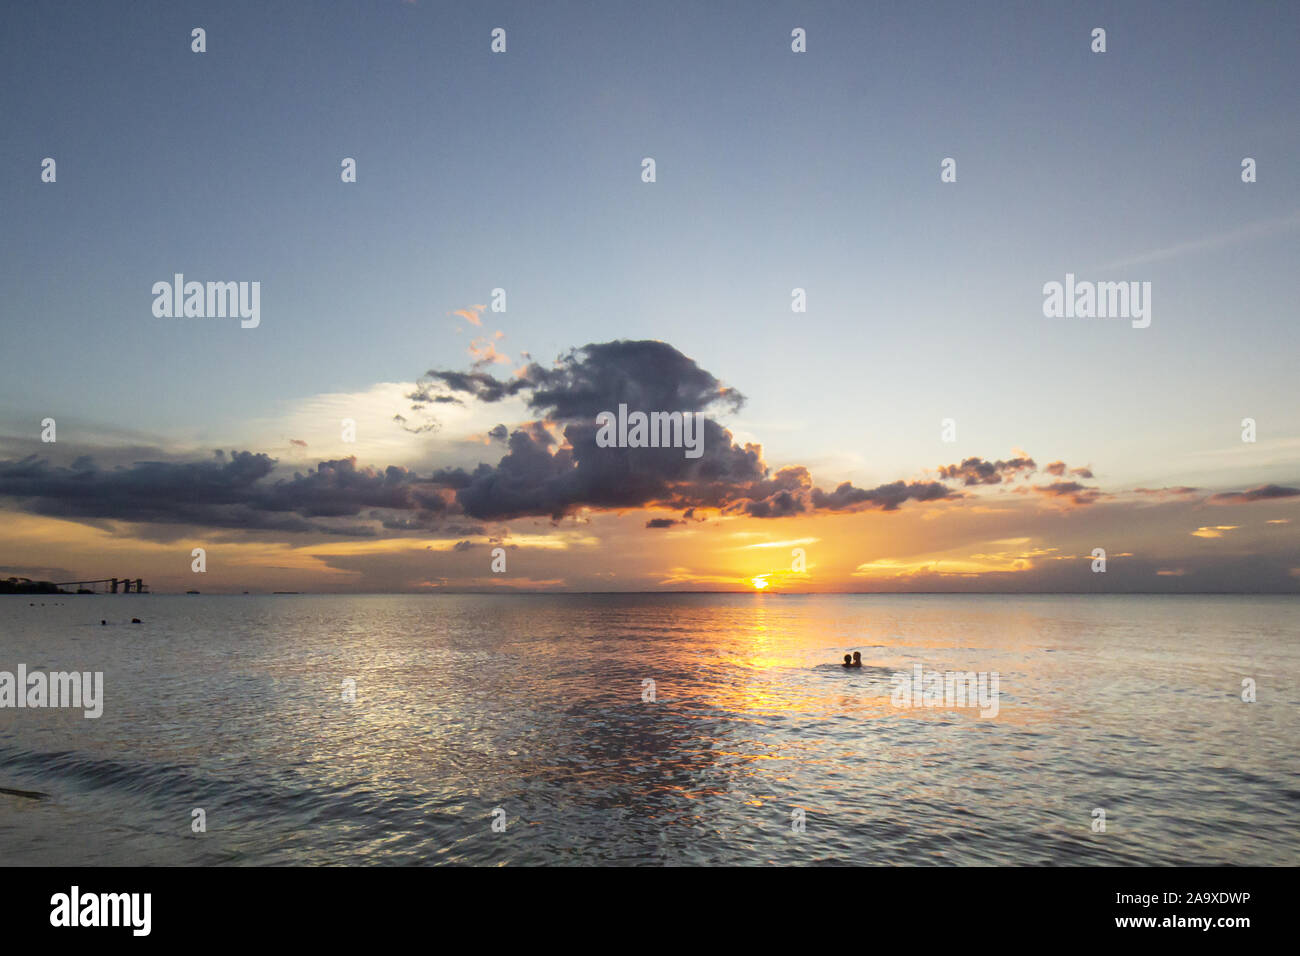 Sunset on a beach of the amazon region Stock Photo